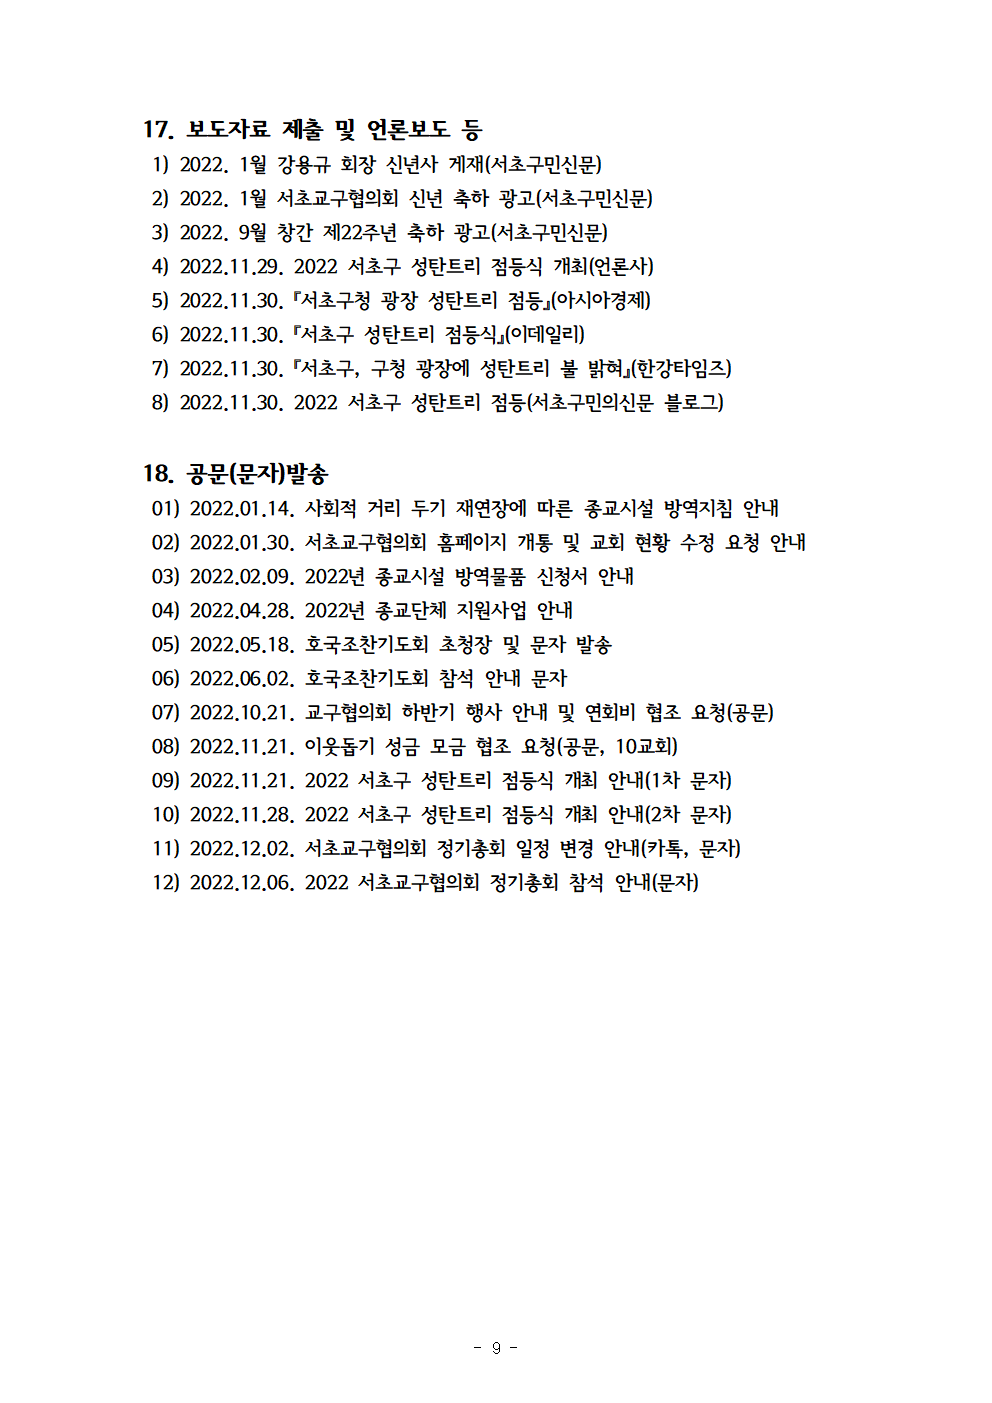 2022회기 서초교구협의회 정기총회자료(12.13.)_홈페이지010.png